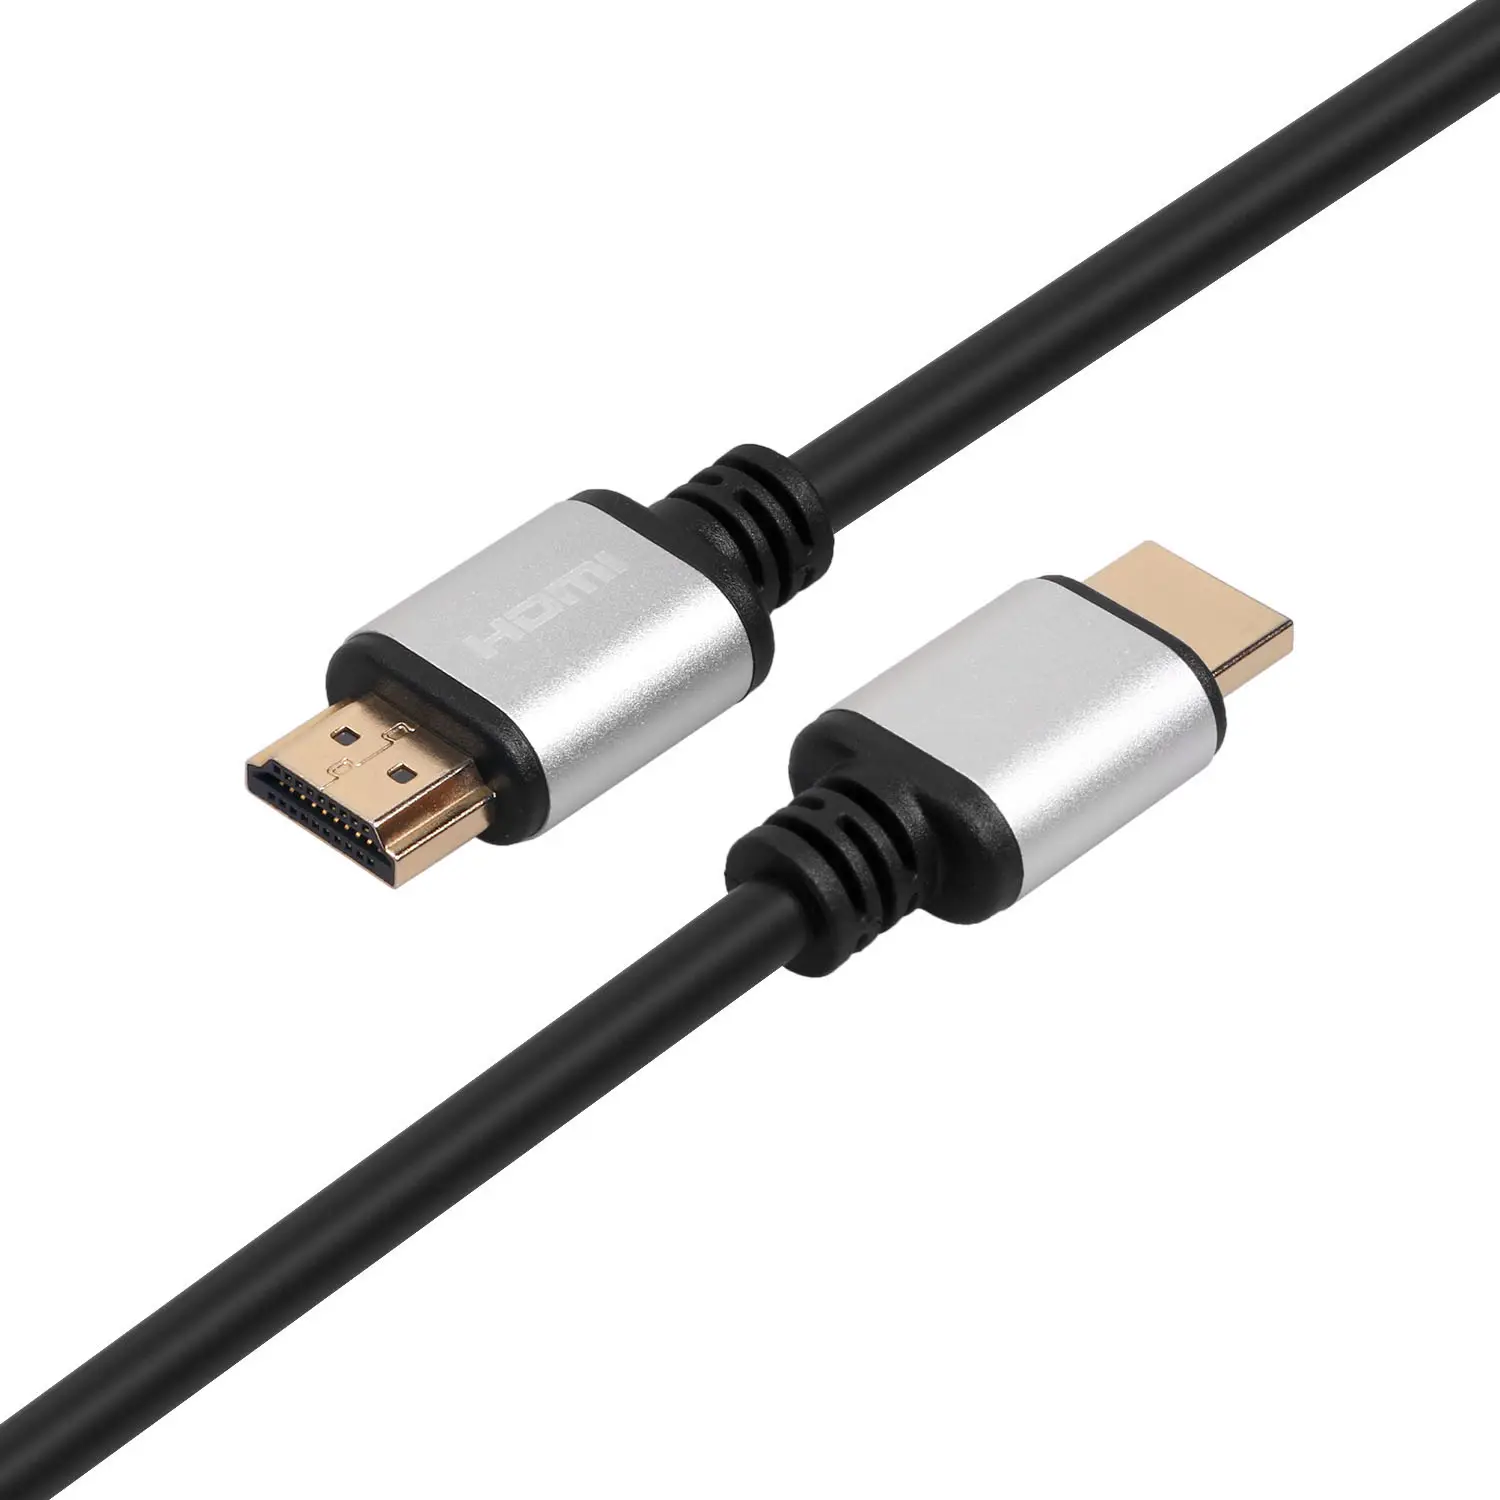 Cable HDMI con carcasa de Metal de alta velocidad, compatible con 4K, 60Hz, 2160p, UHD, para proyector HDTV PS4